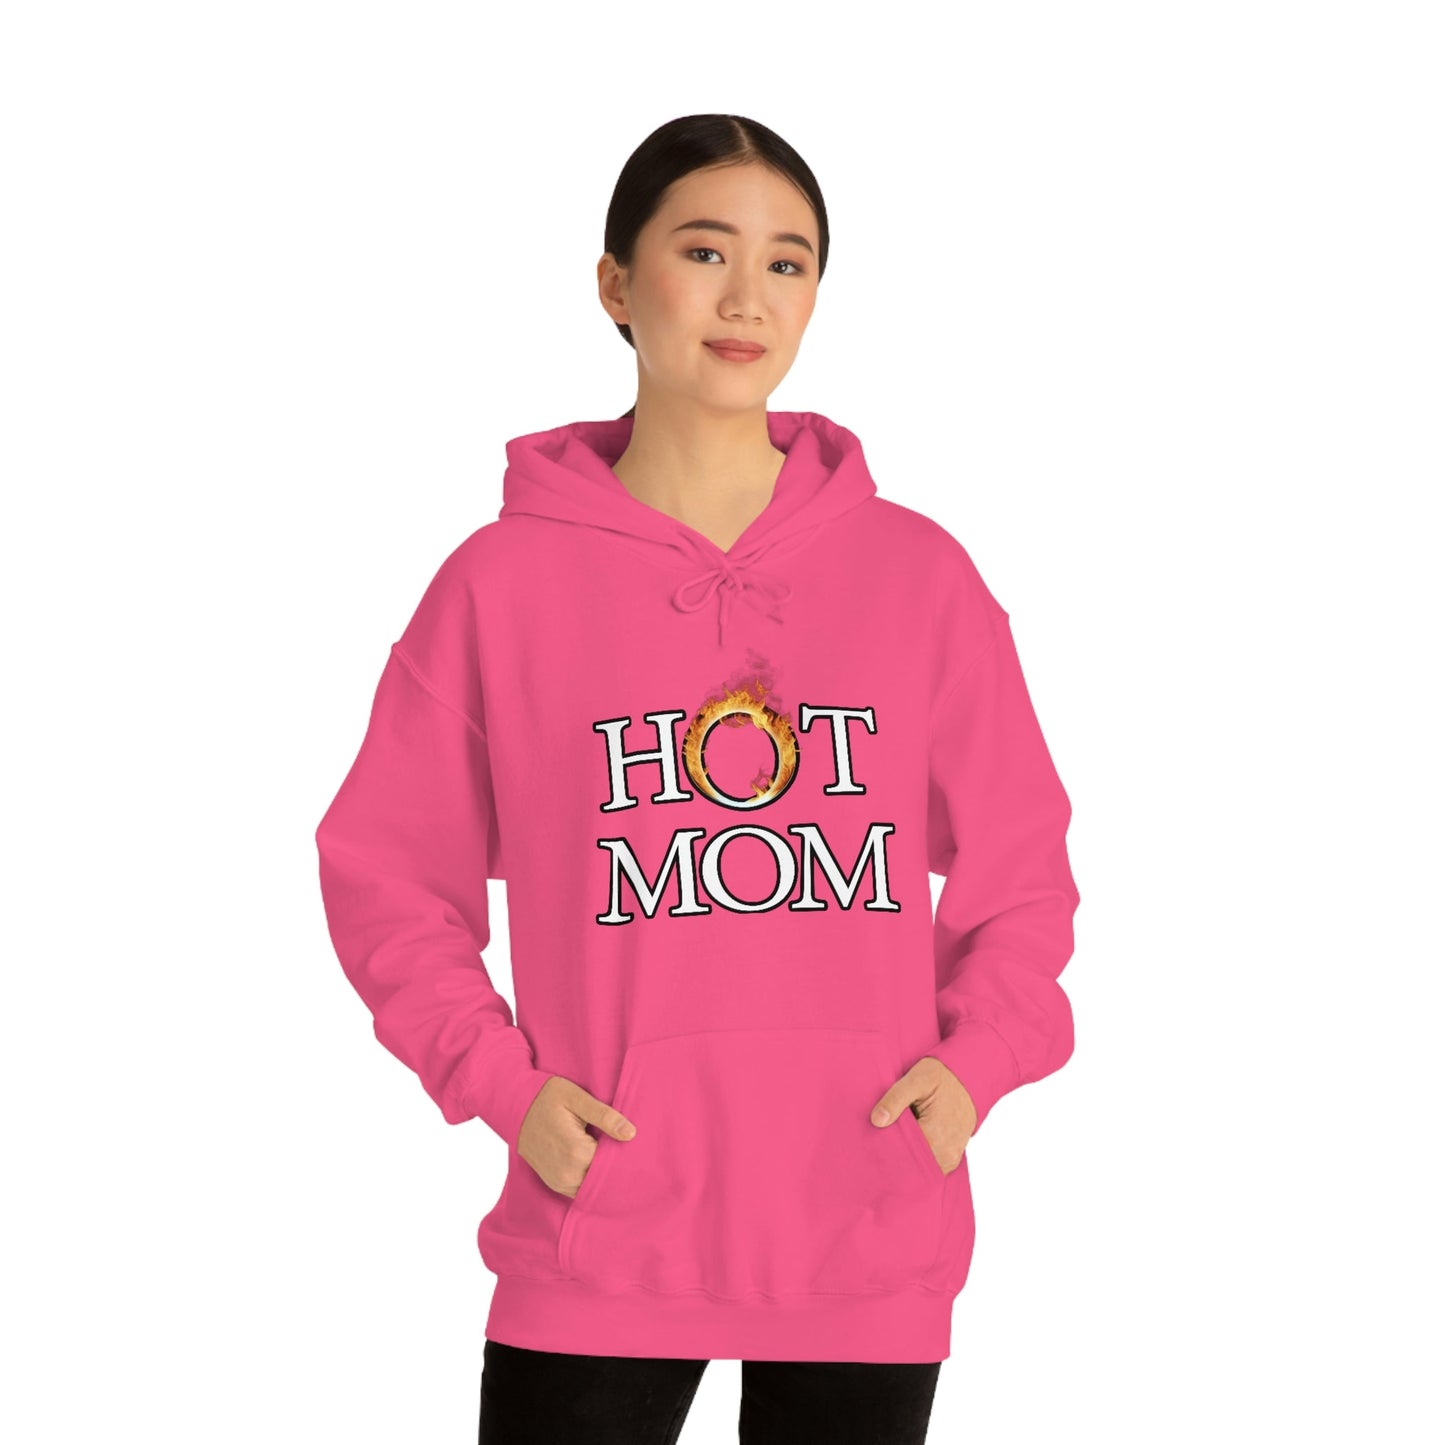 Hot Mom Hoodie - Bind on Equip - 98841776736590664808